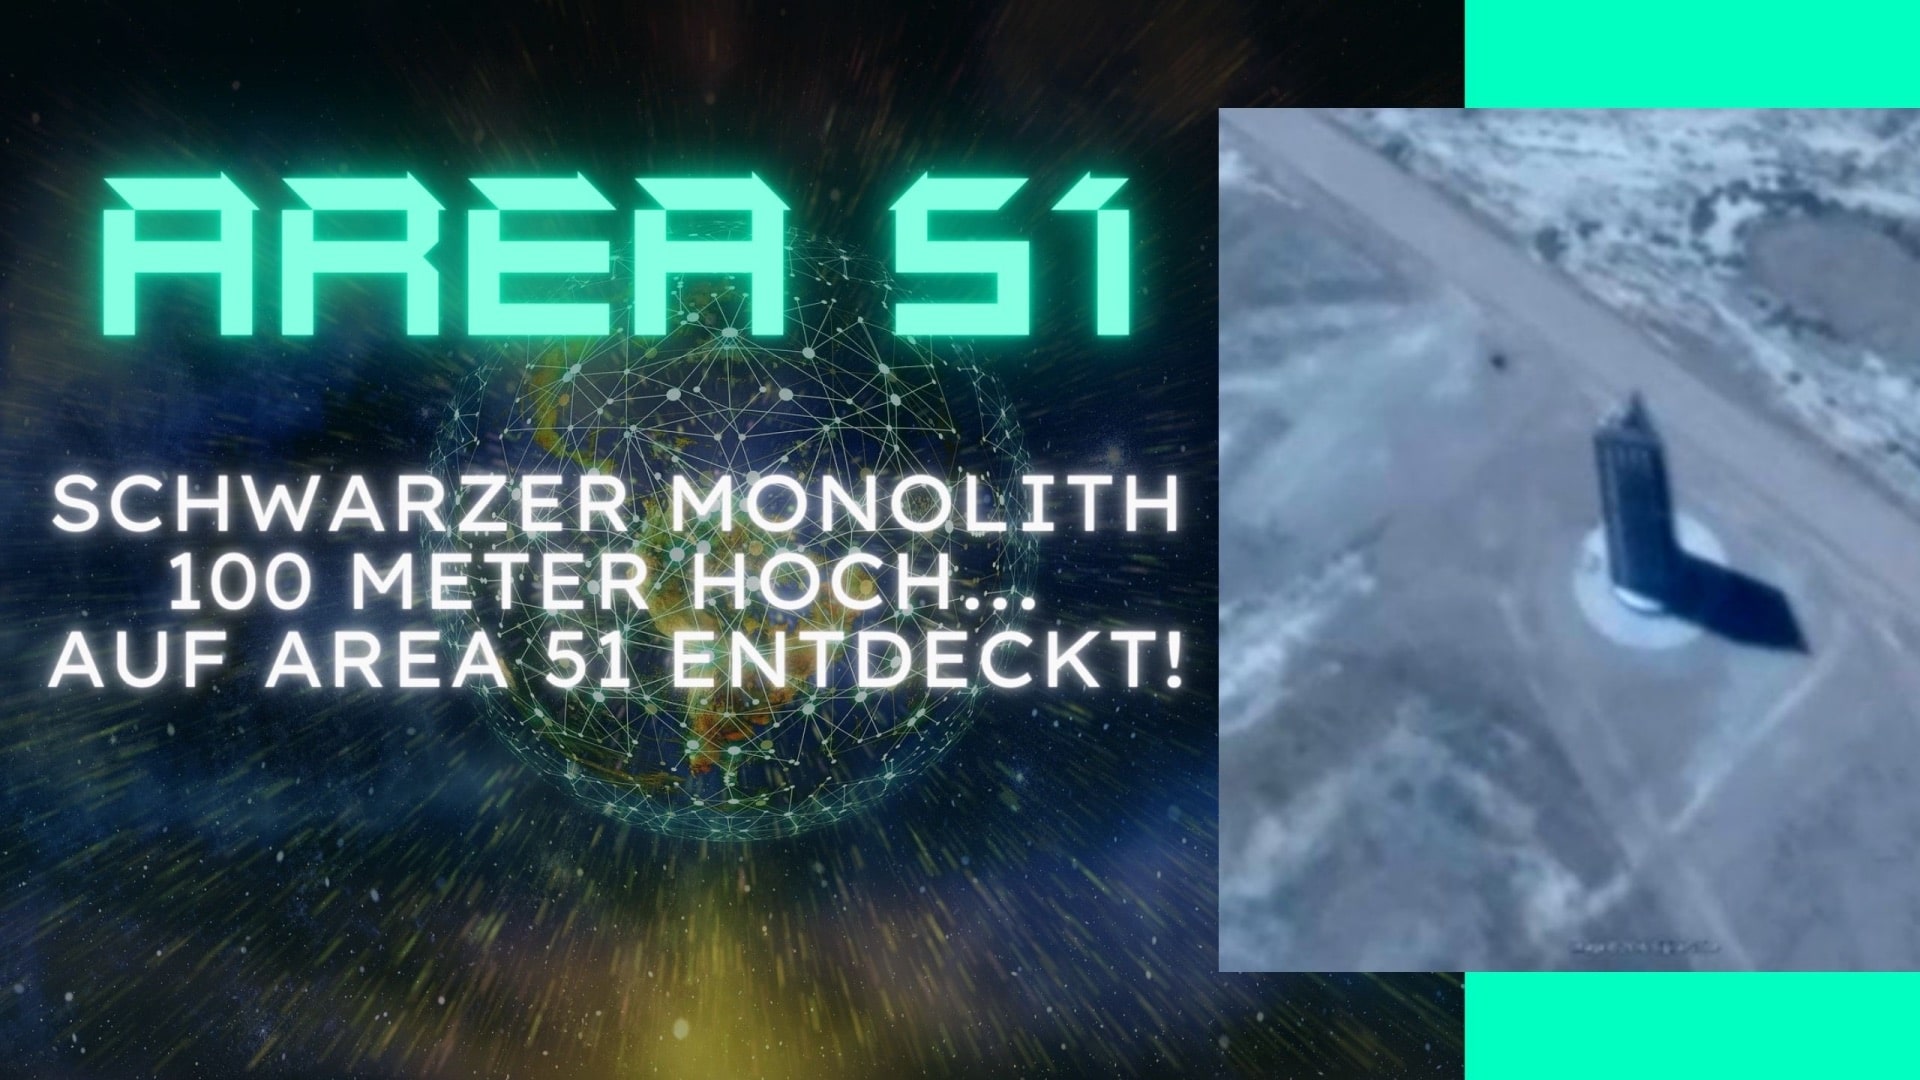 Area 51 - Schwarzer Monolith entdeckt